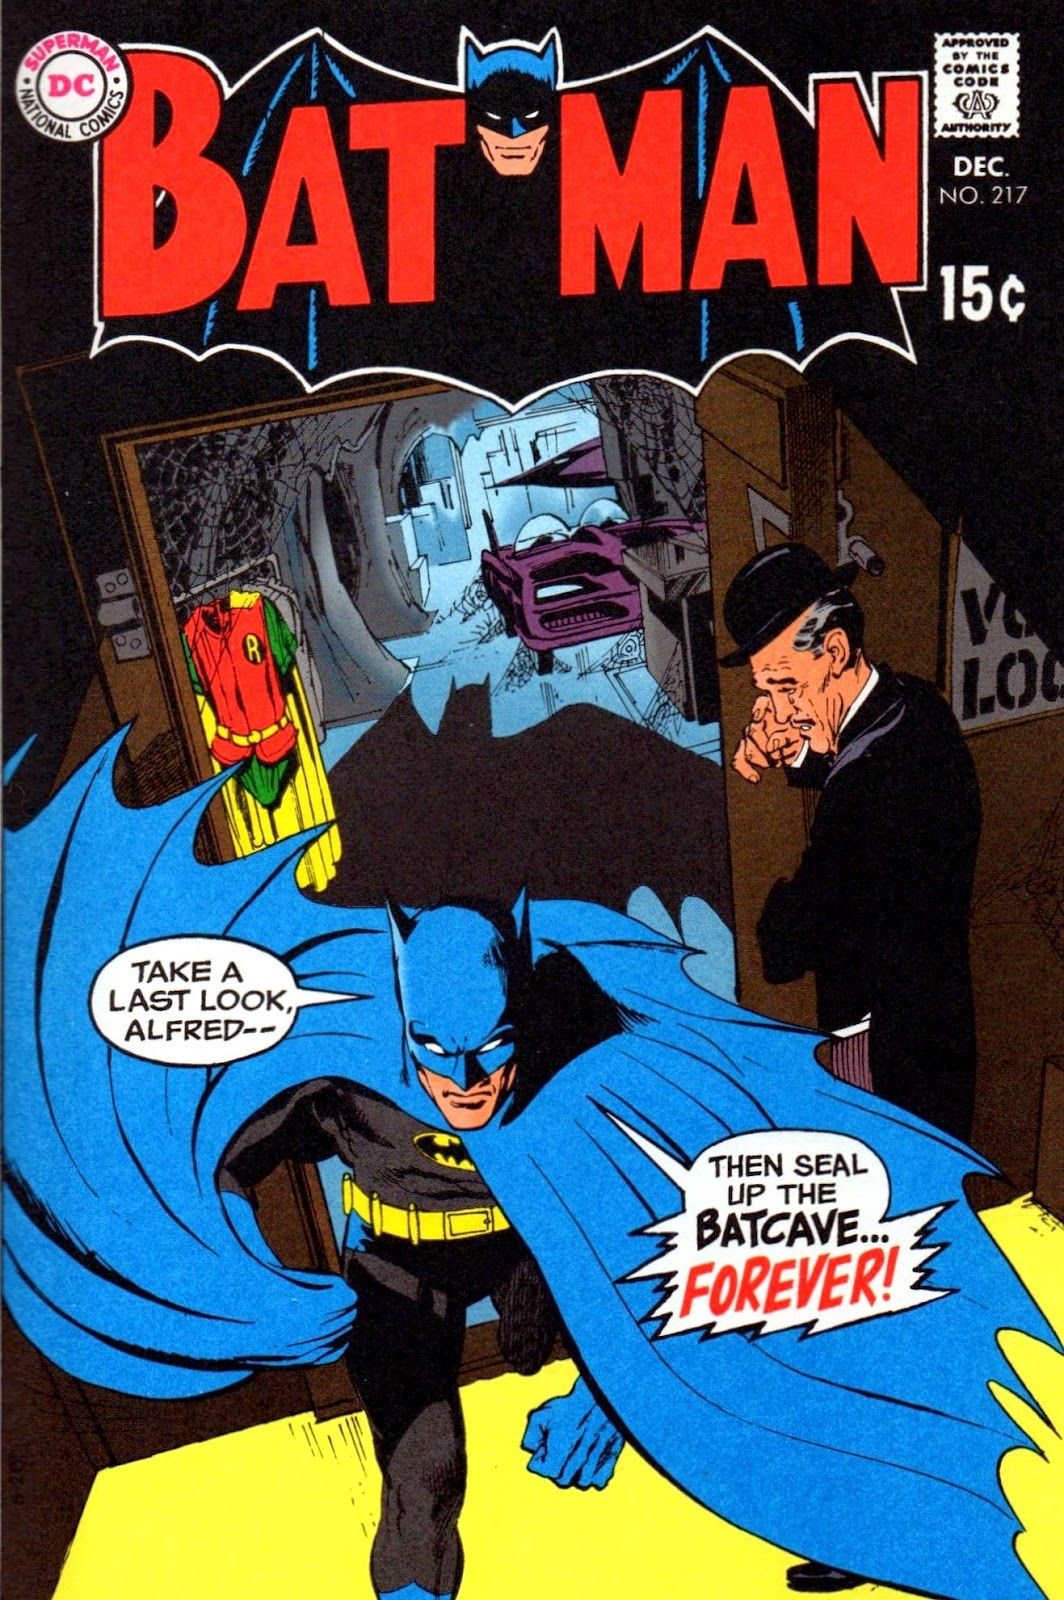 Batman Joker Dark Knight Wallpaper